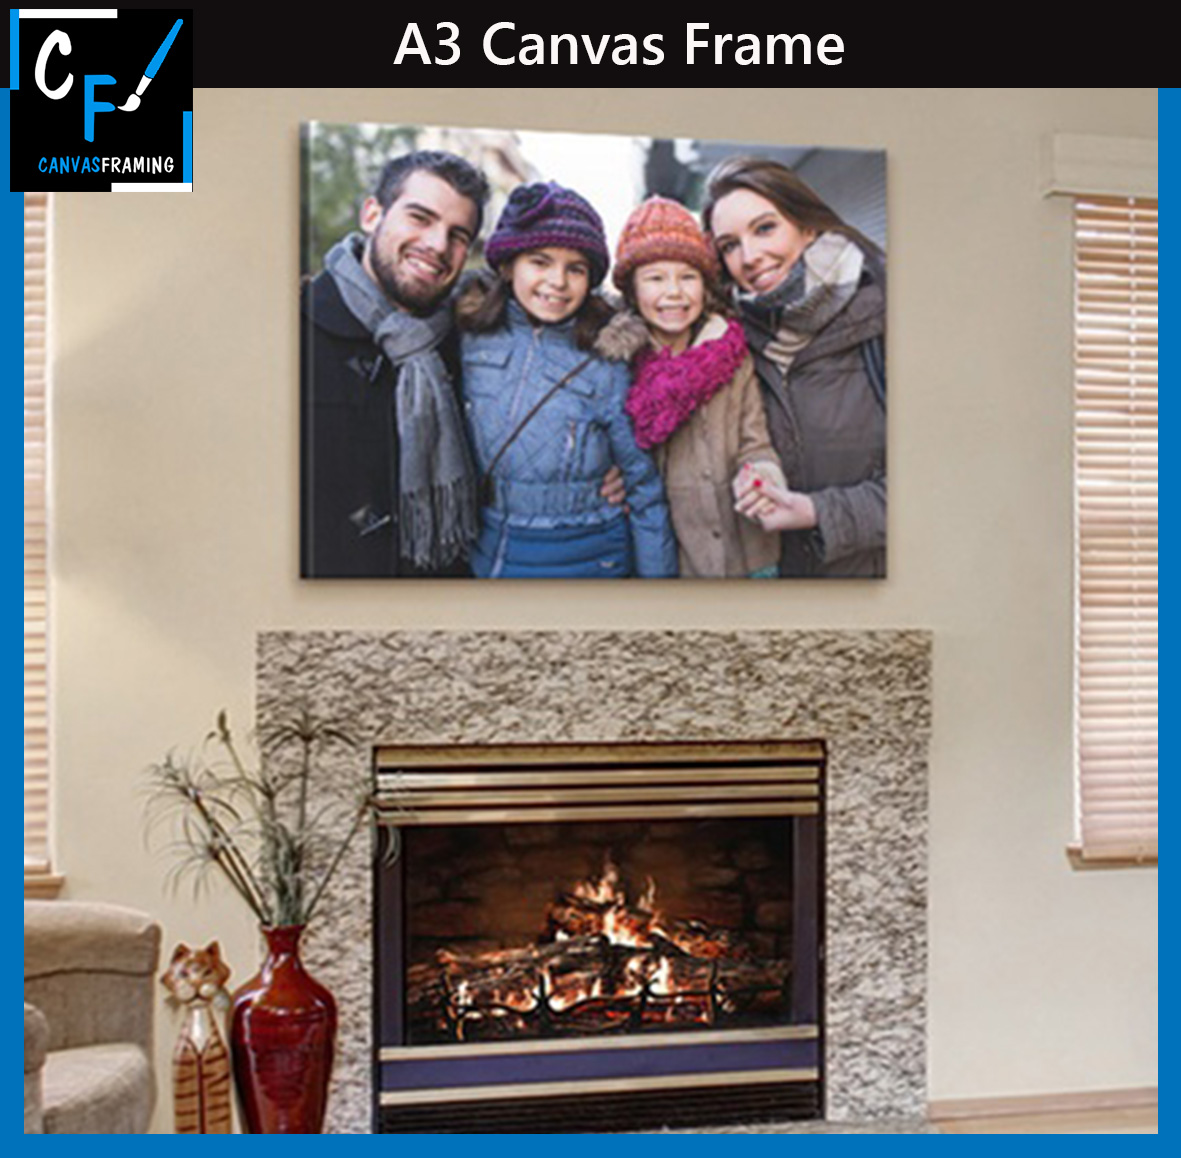 A3 Canvas Frame